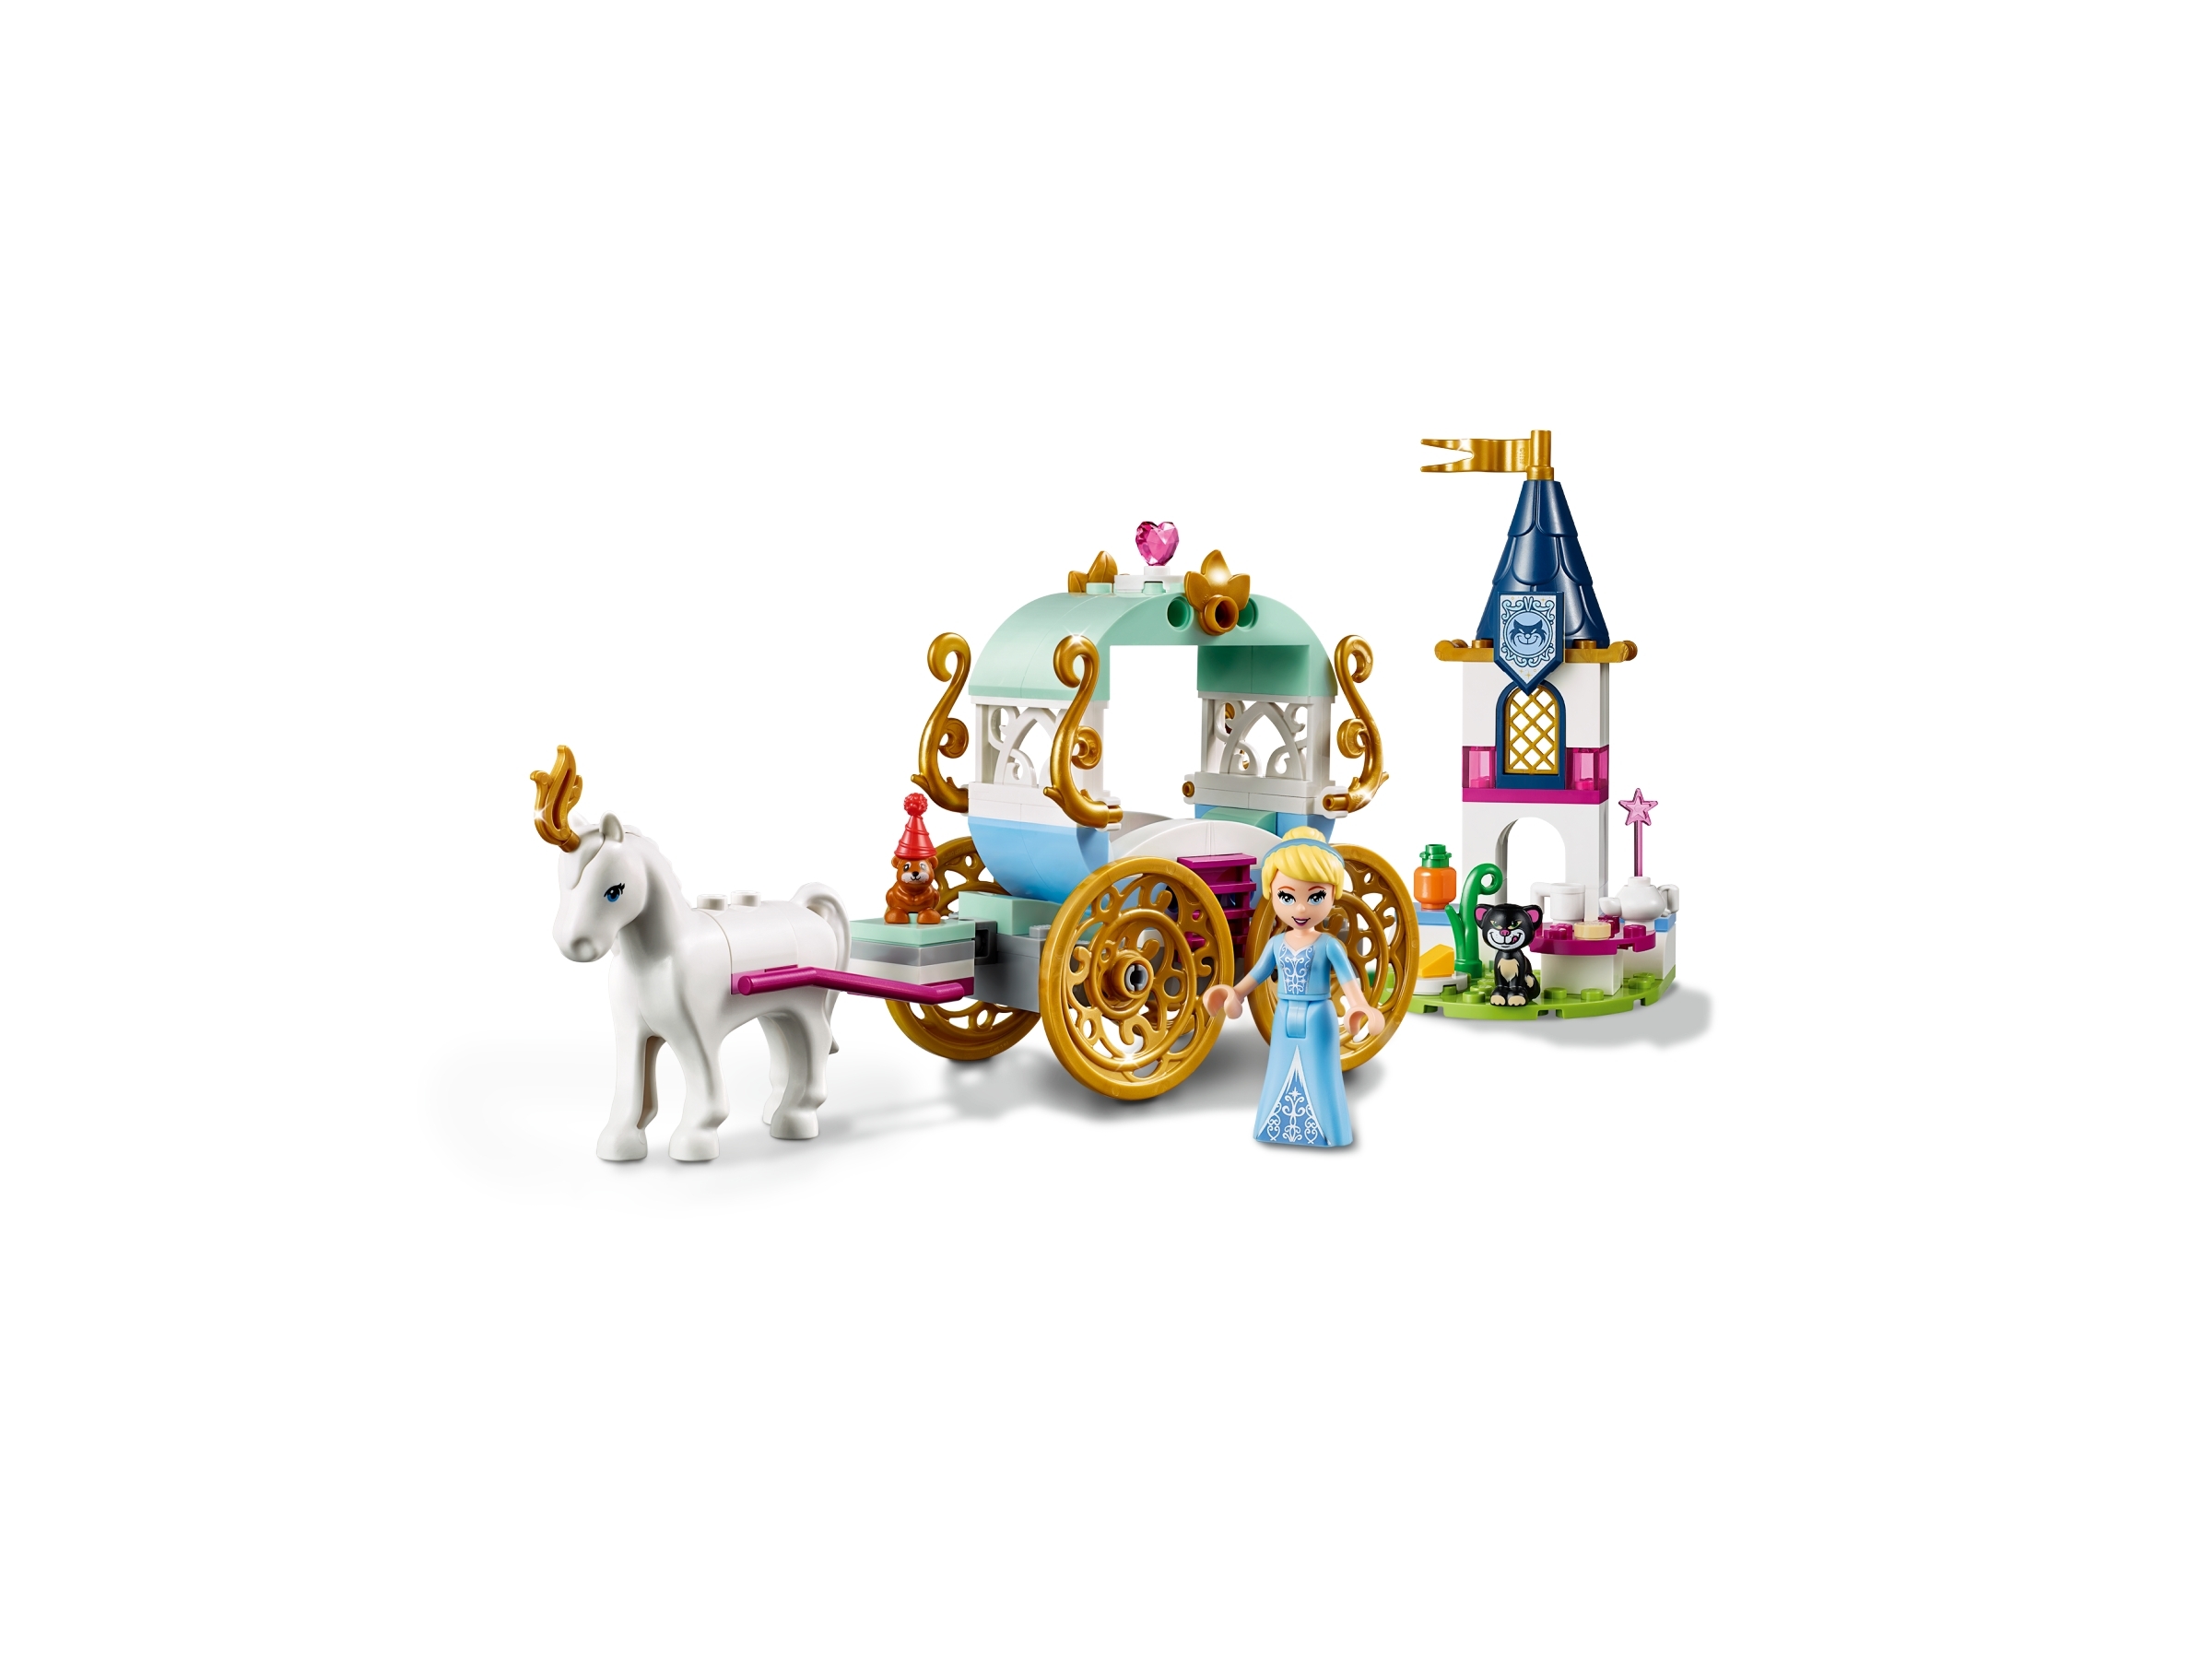 cinderella's carriage ride lego